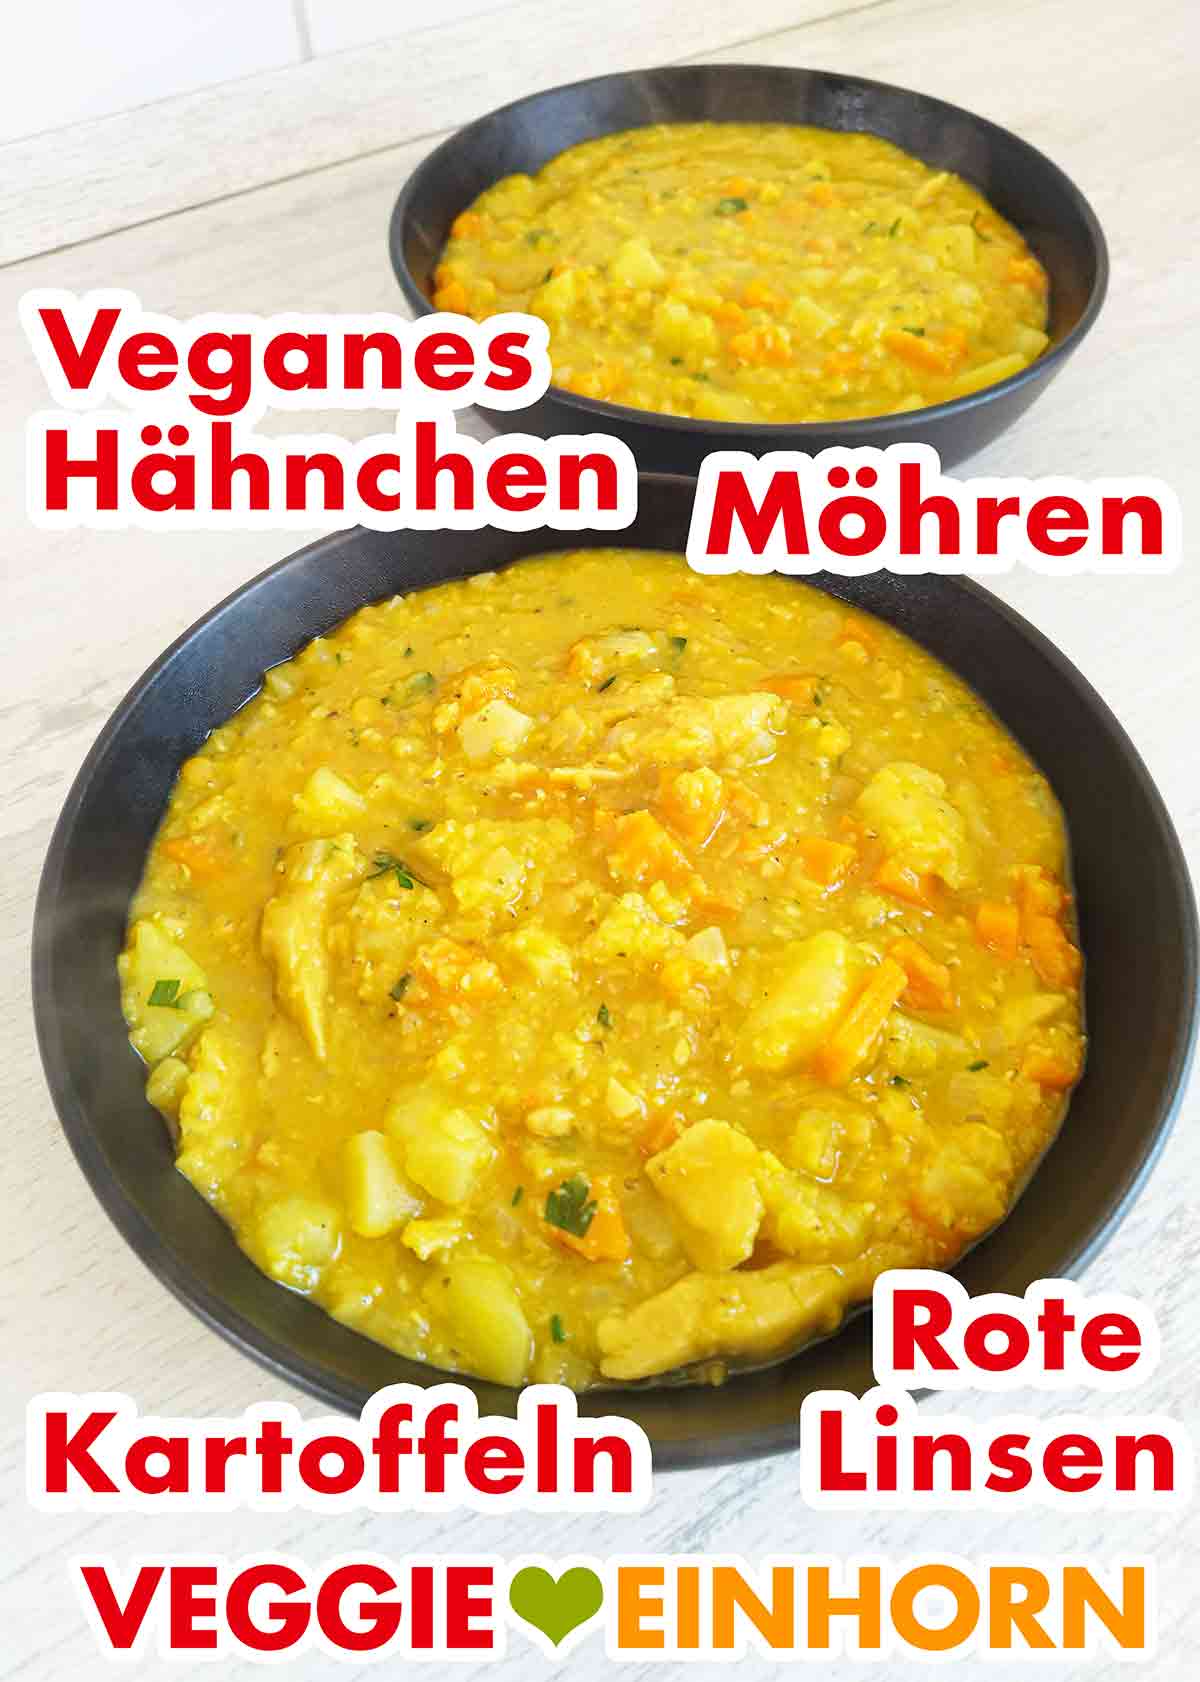 Zwei Teller mit veganem Eintopf mit veganem Hähnchen, Möhren, Kartoffeln und roten Linsen